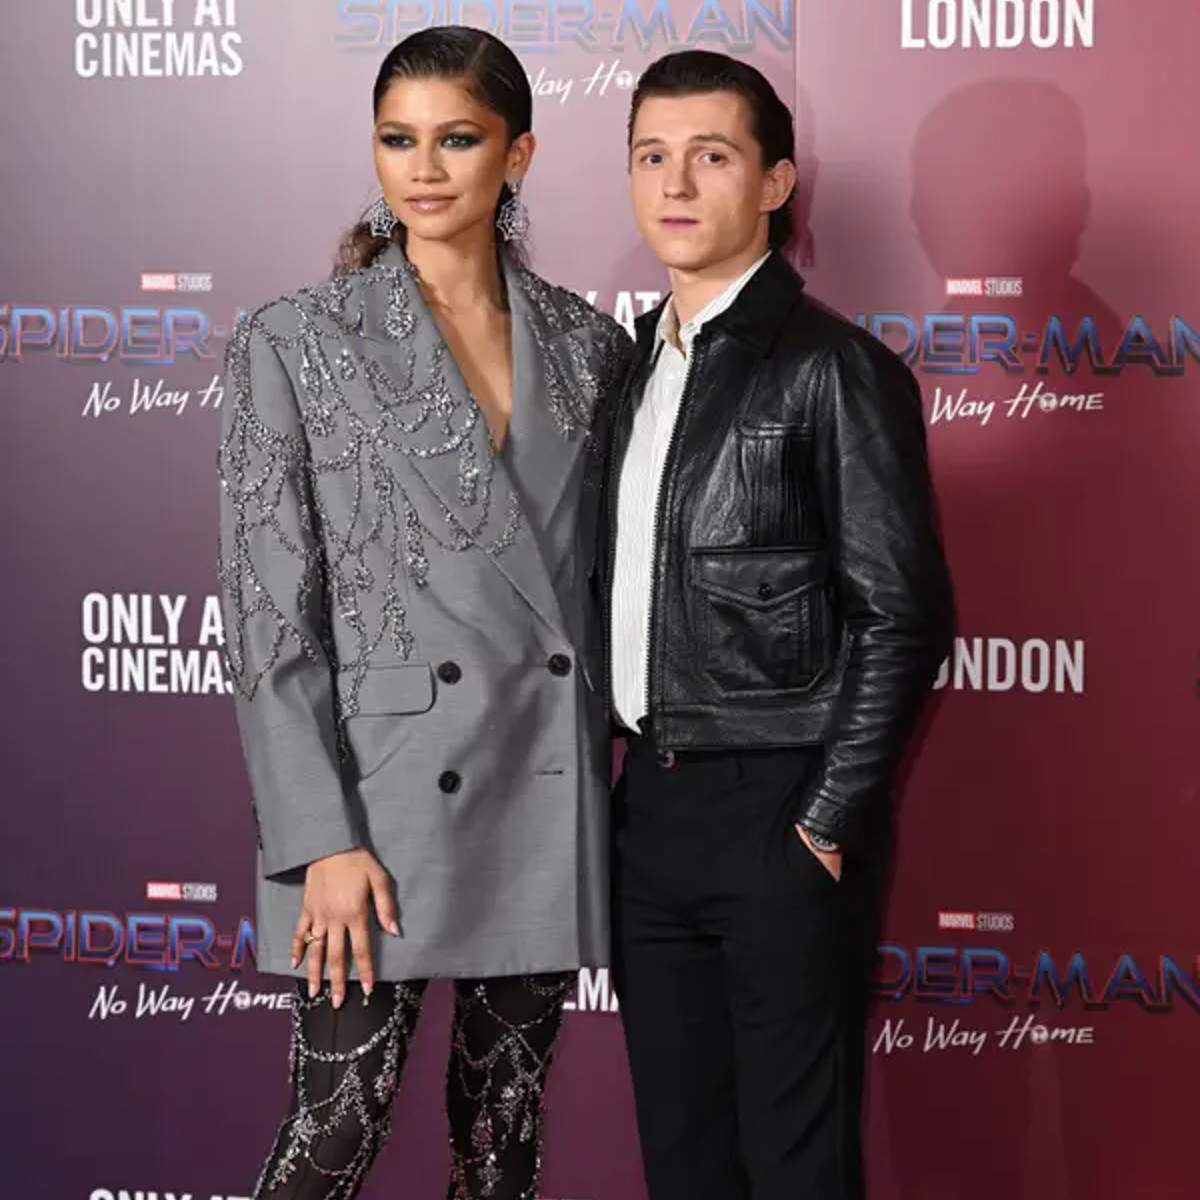 Zendaya Y Tom Holland Posan Juntos En La Premiere De Spider Man No Way Home En Londres